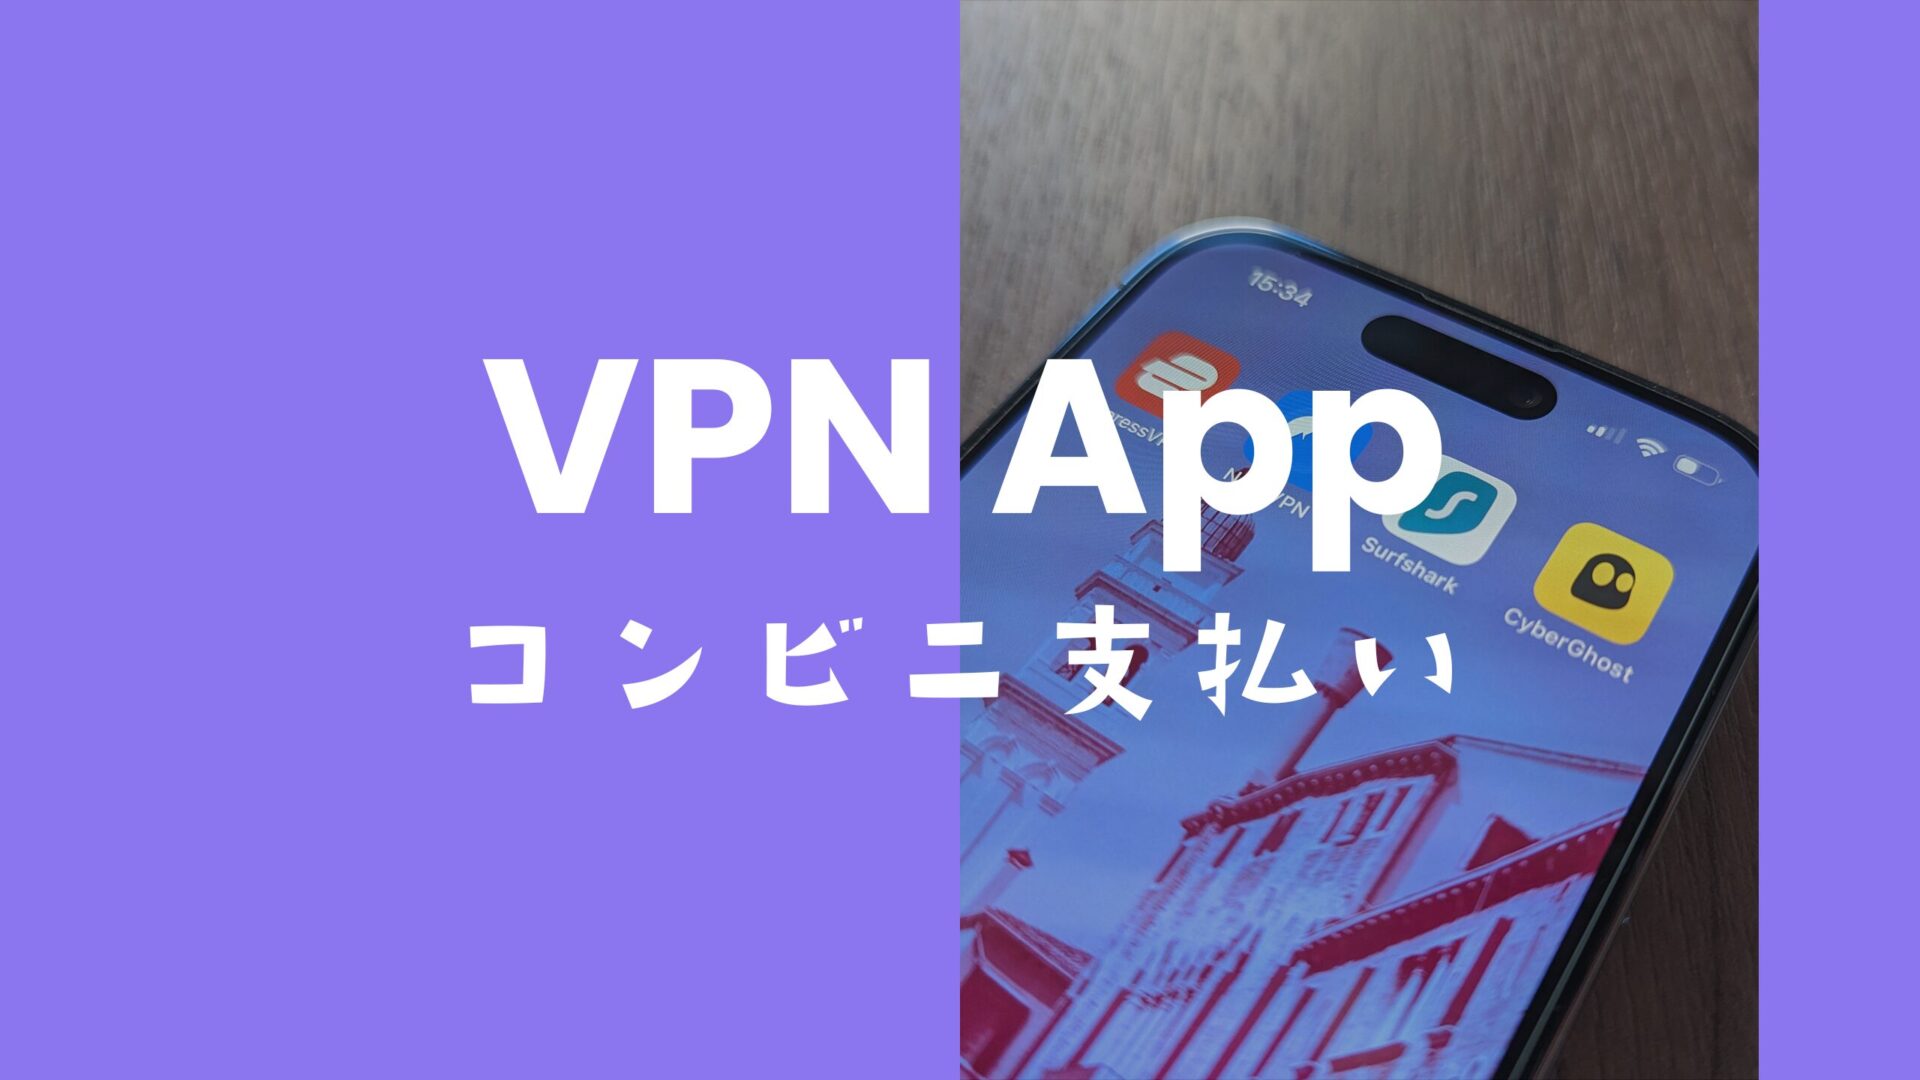 VPNはコンビニ支払いで有料プランを購入できるのか解説。のサムネイル画像